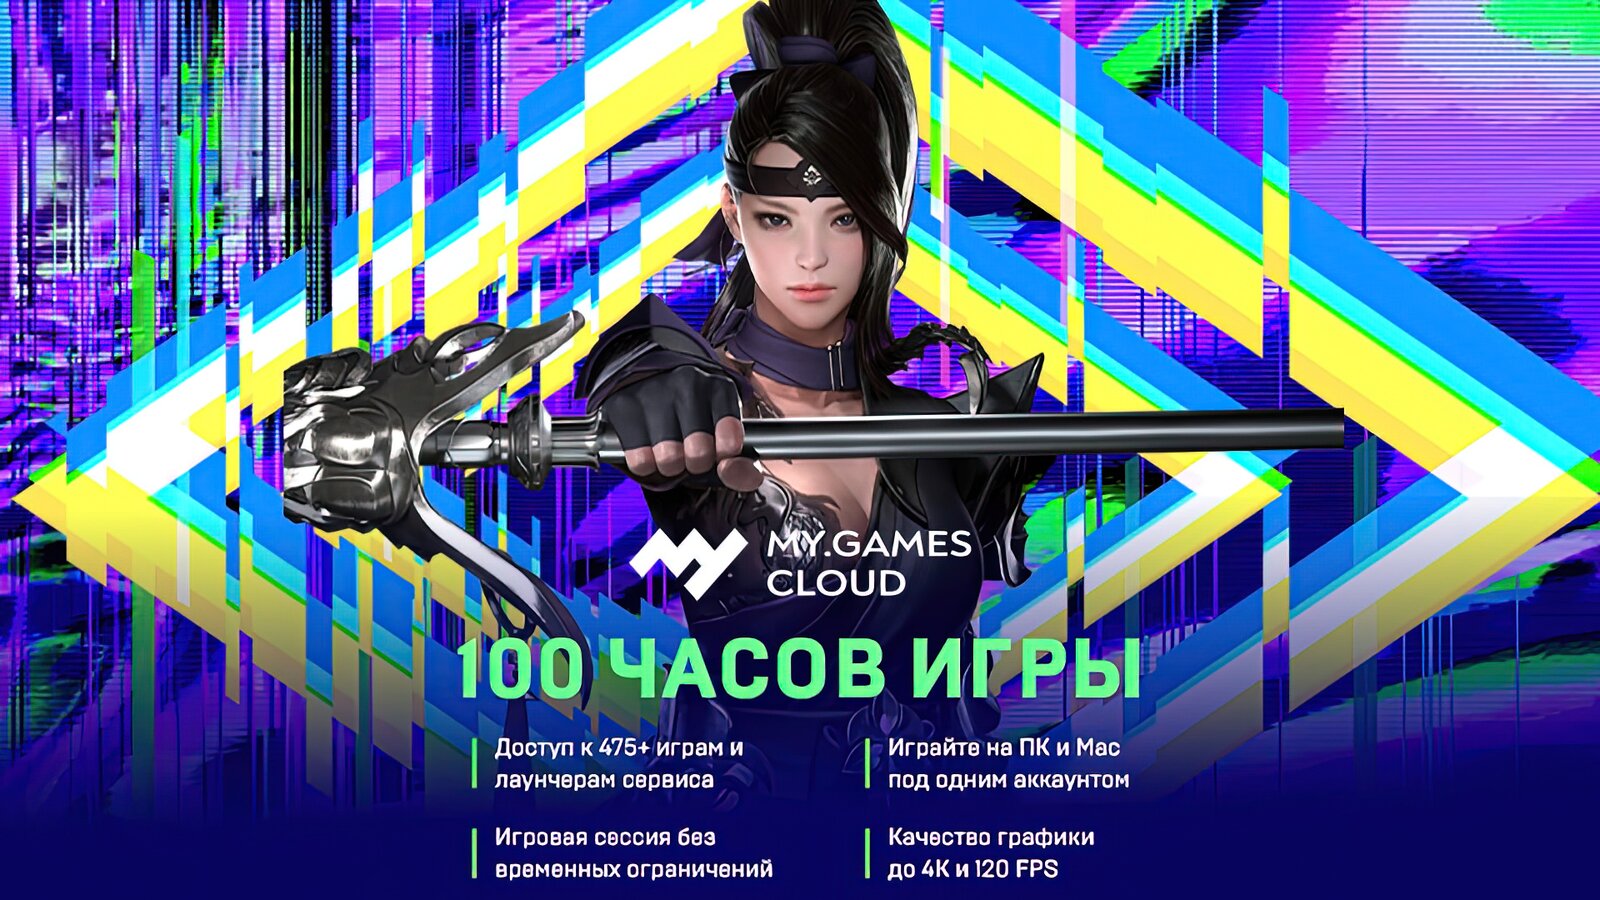 MY.GAMES Cloud - Подписка 100 часов